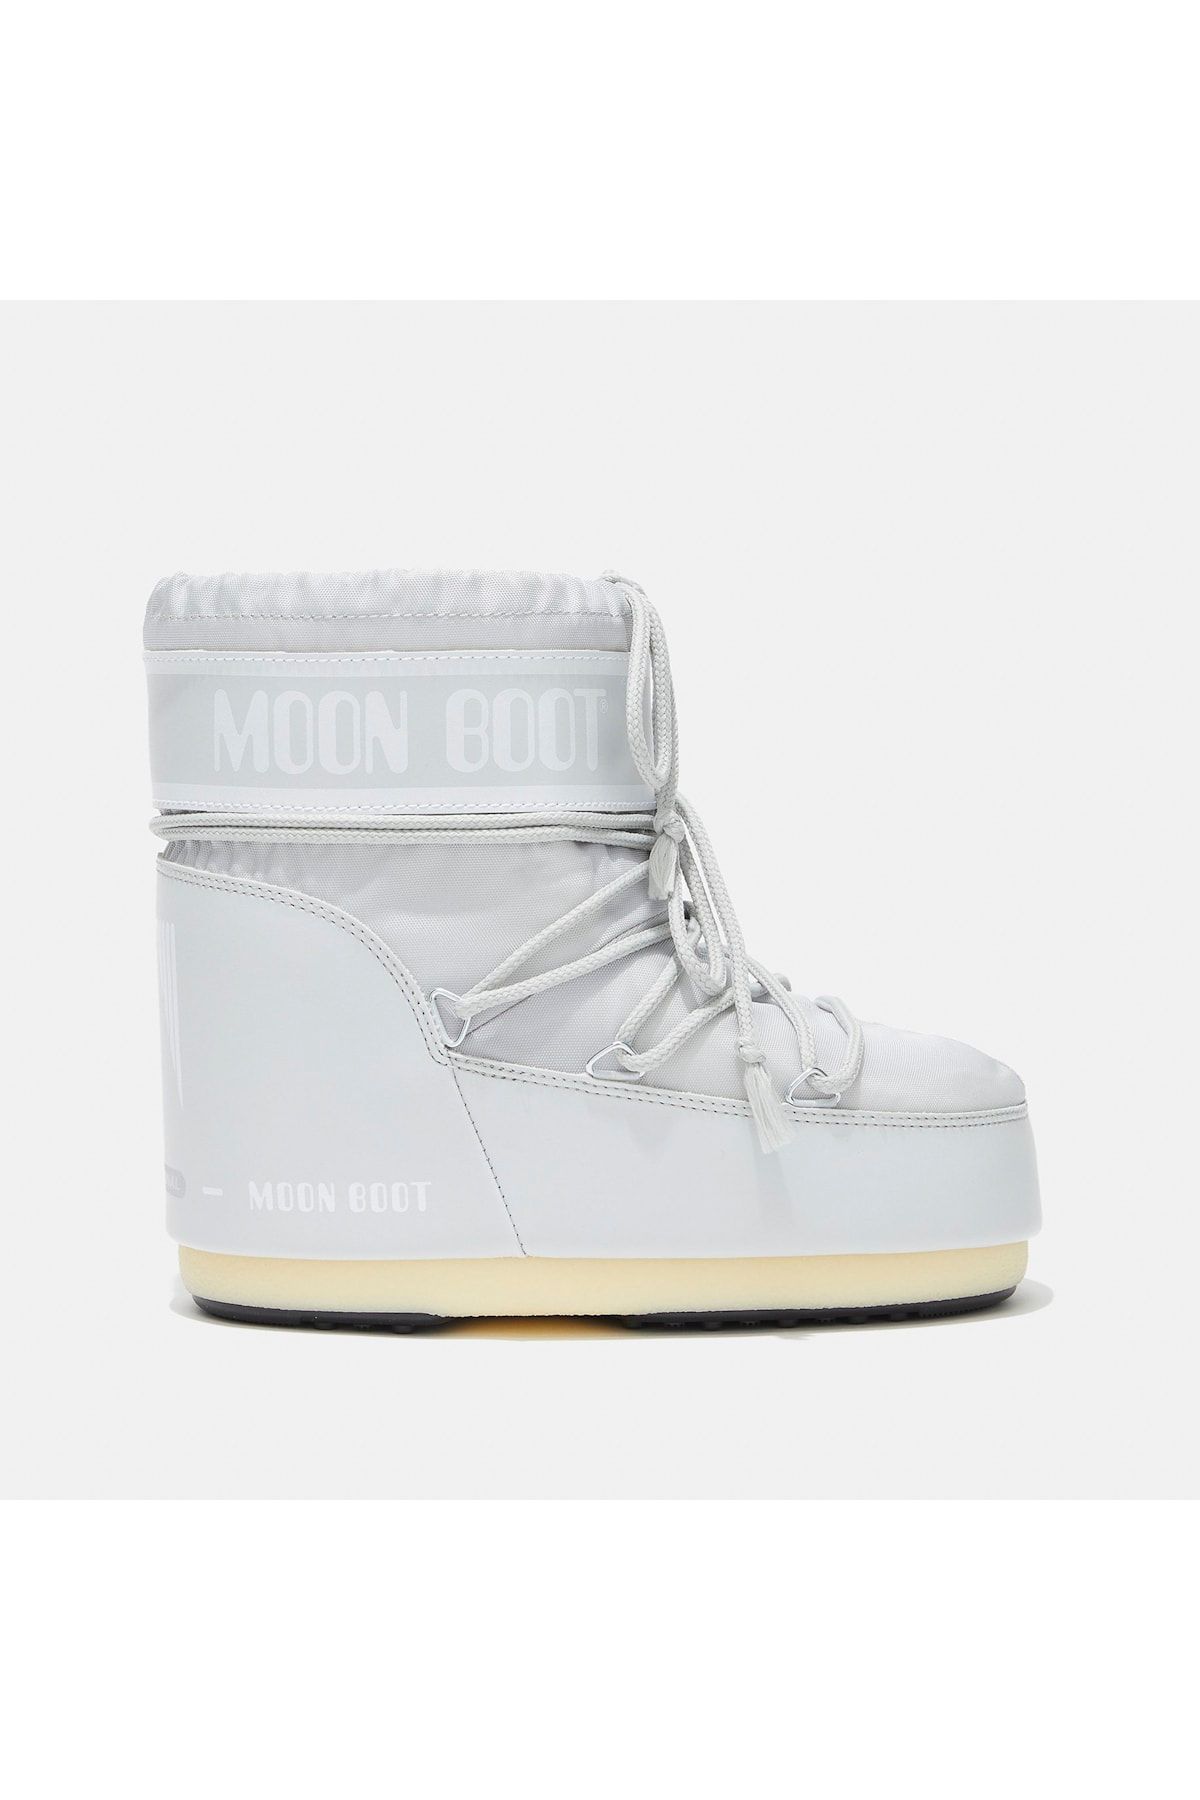 Moon Boot Kadın Bot 14093400-012 Icon Low 2 Glacier Grey